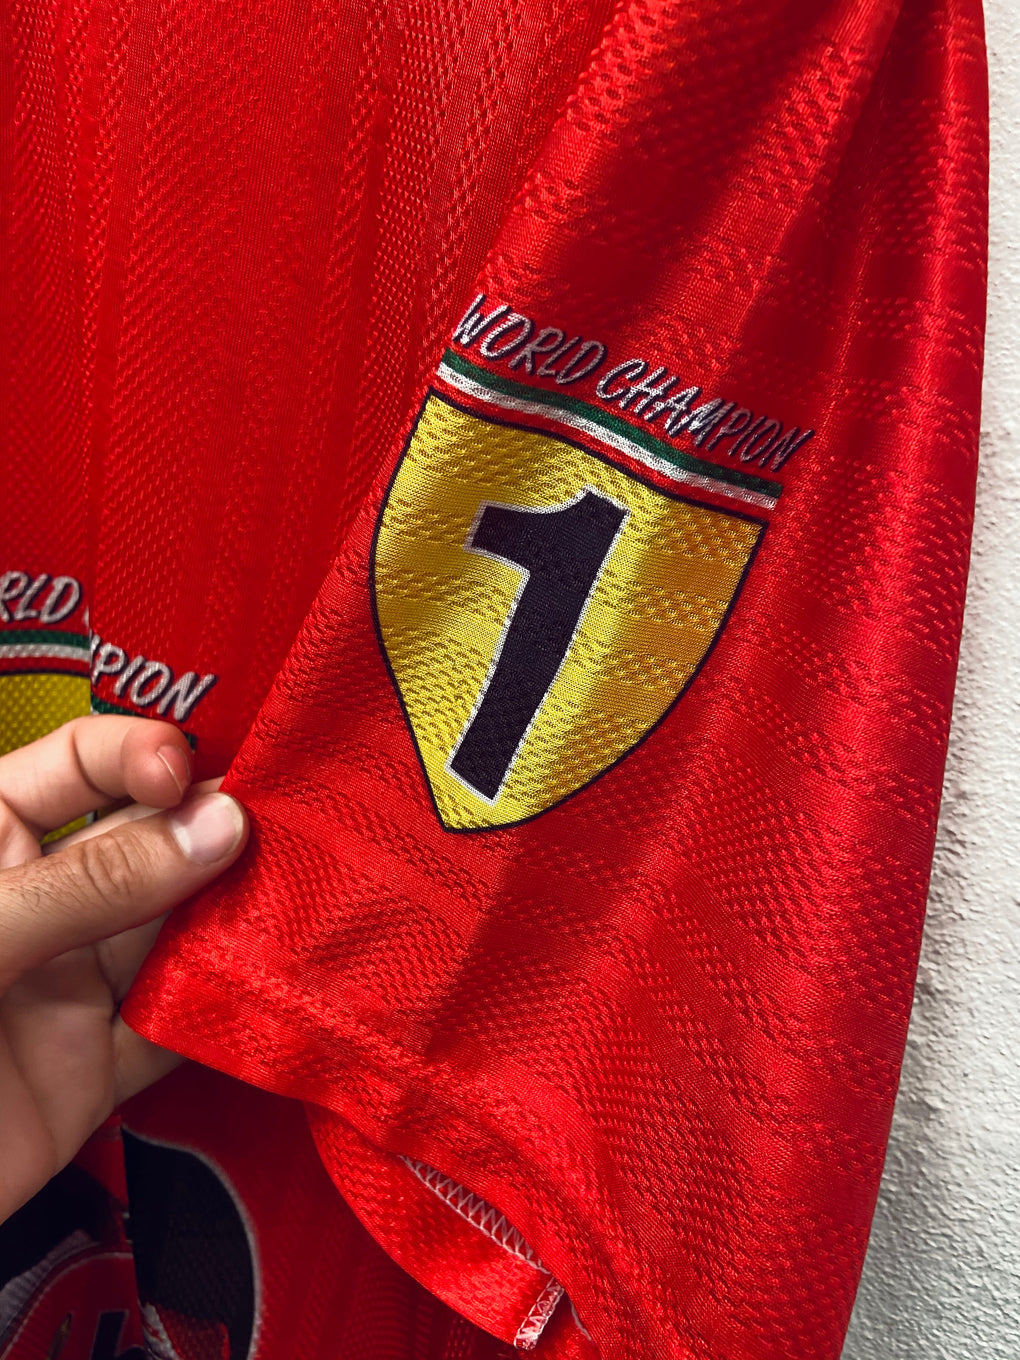 Ferrari World Champion Shirt (M)